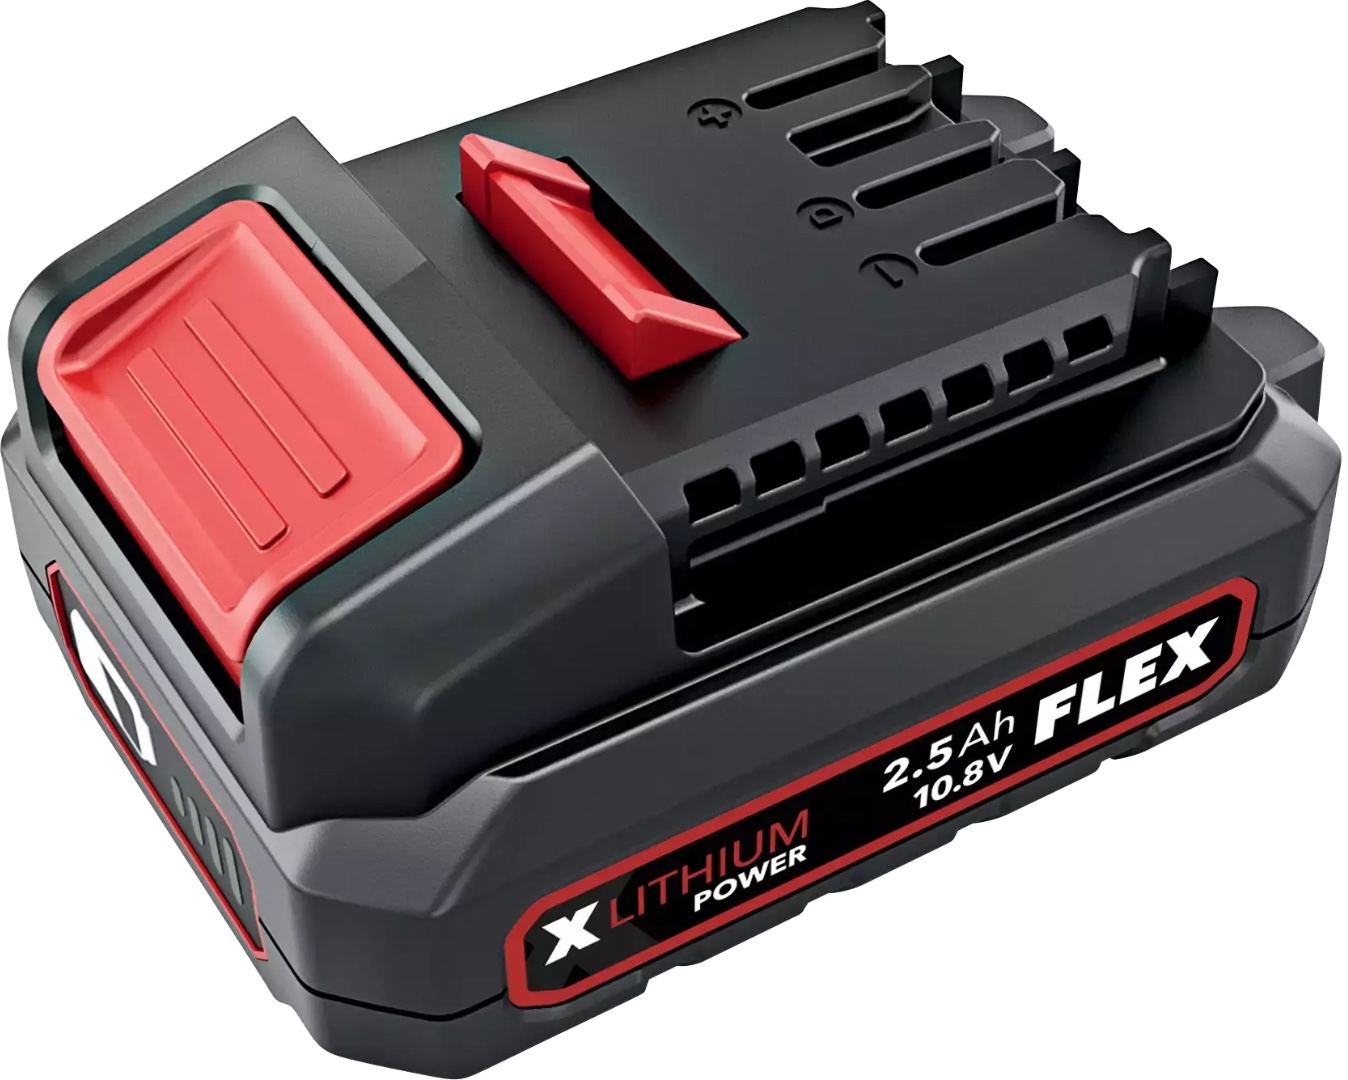 Аккумулятор Flex AP 10.8 / 2.5 Li-Ion 418048 аккумулятор flex